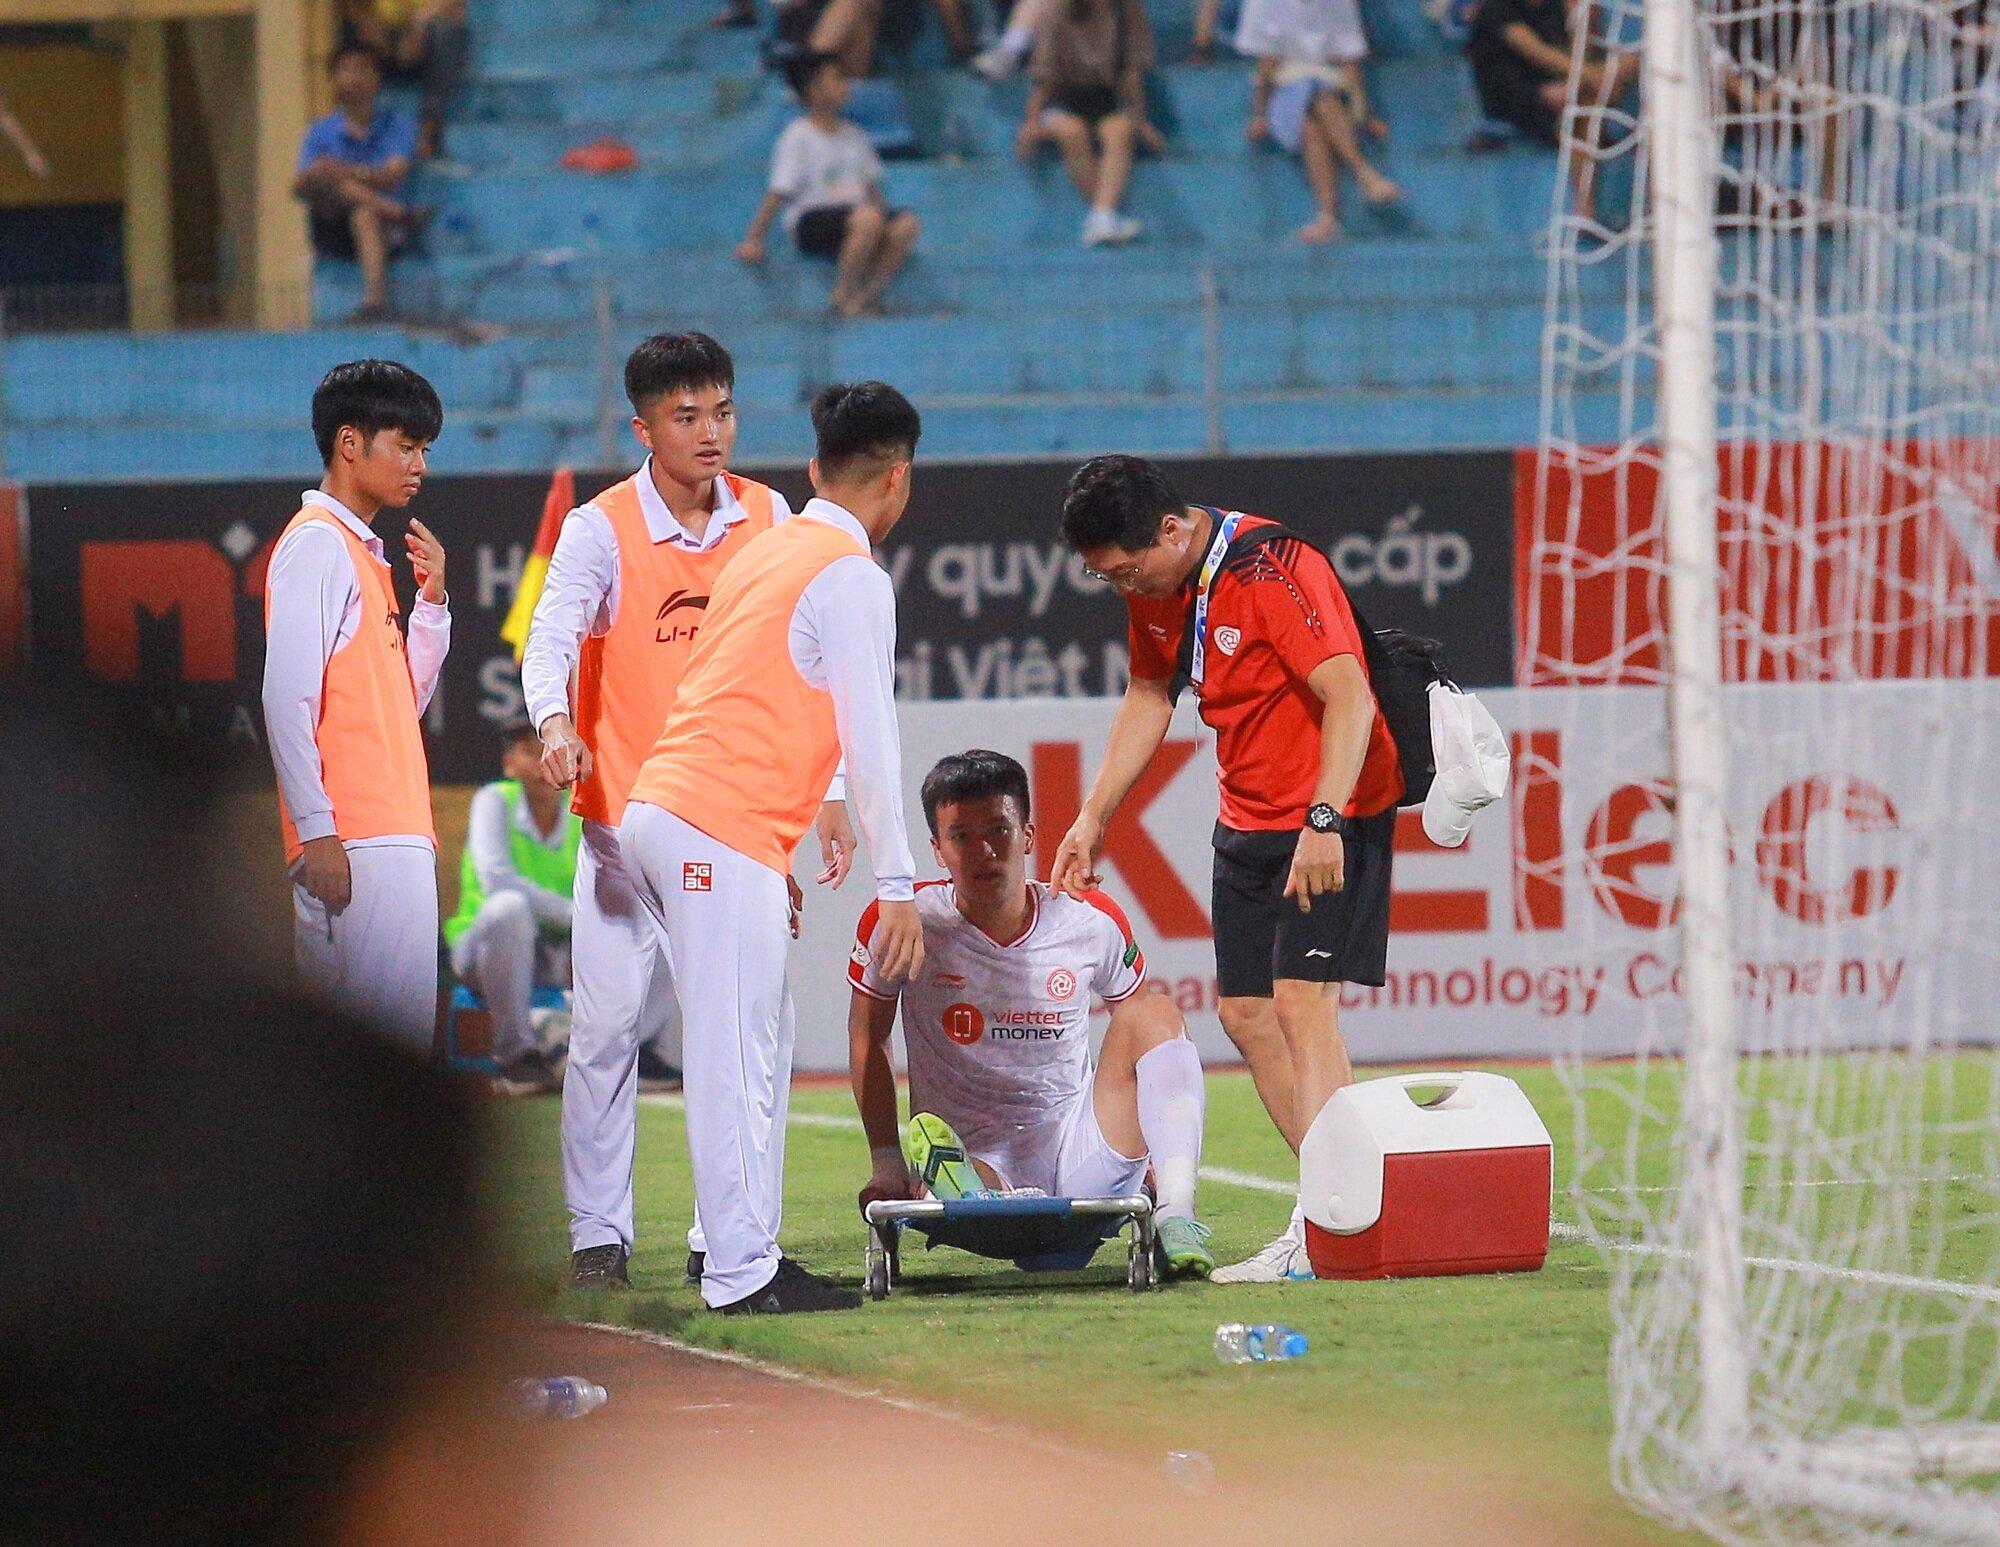 Cầu thủ Nguyễn Hoàng Đức đã bị chấn thương, phải rời sân bằng cáng, không thể tiếp tục thi đấu (Ảnh: Internet)